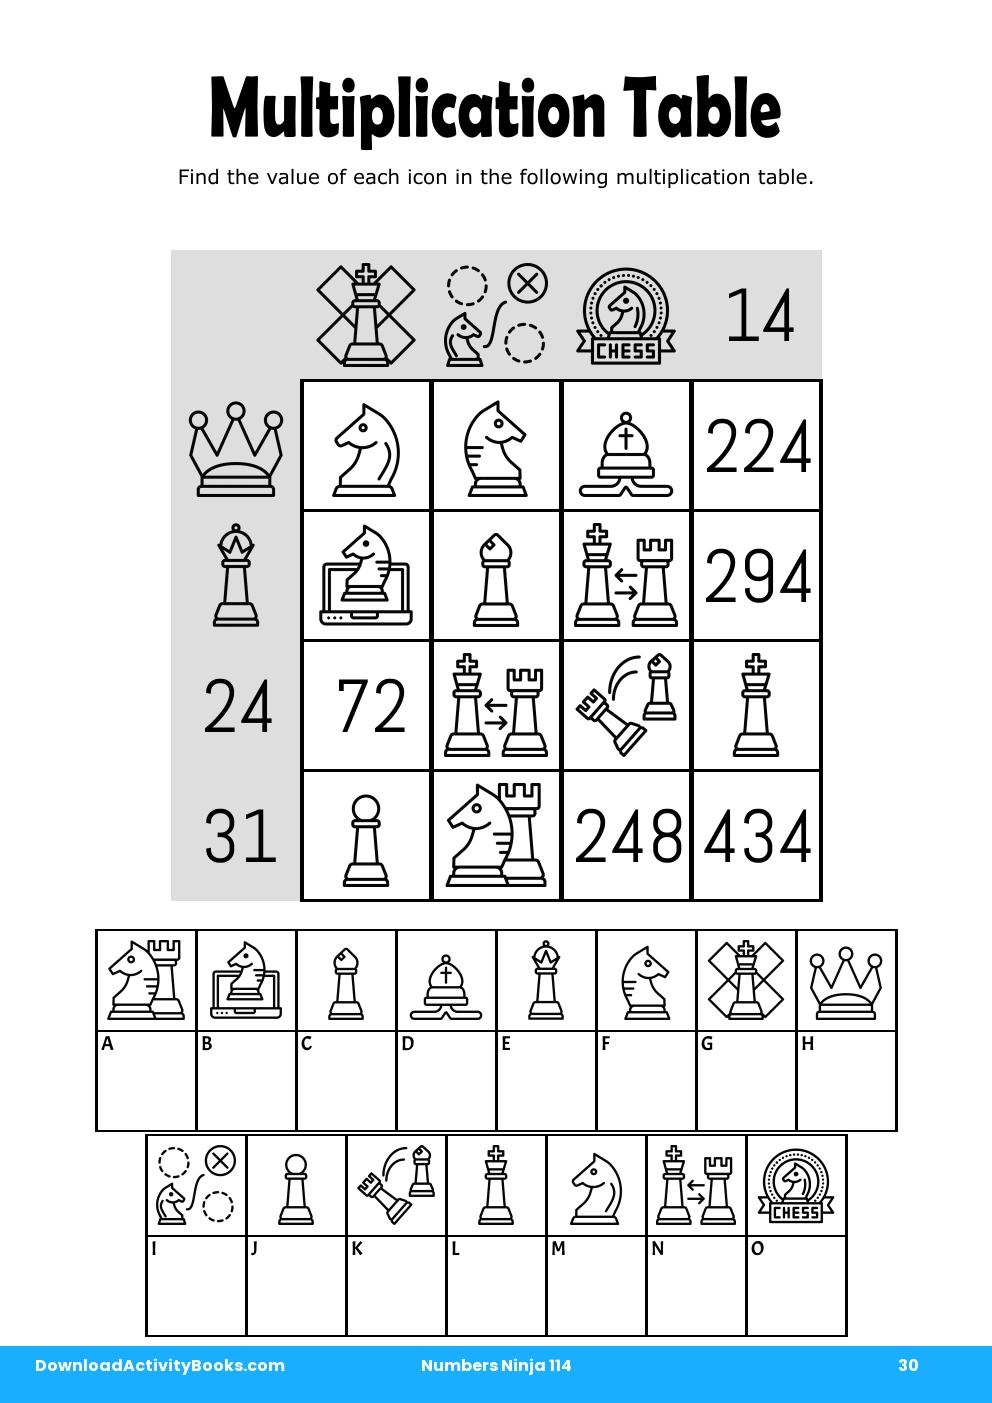 Multiplication Table in Numbers Ninja 114